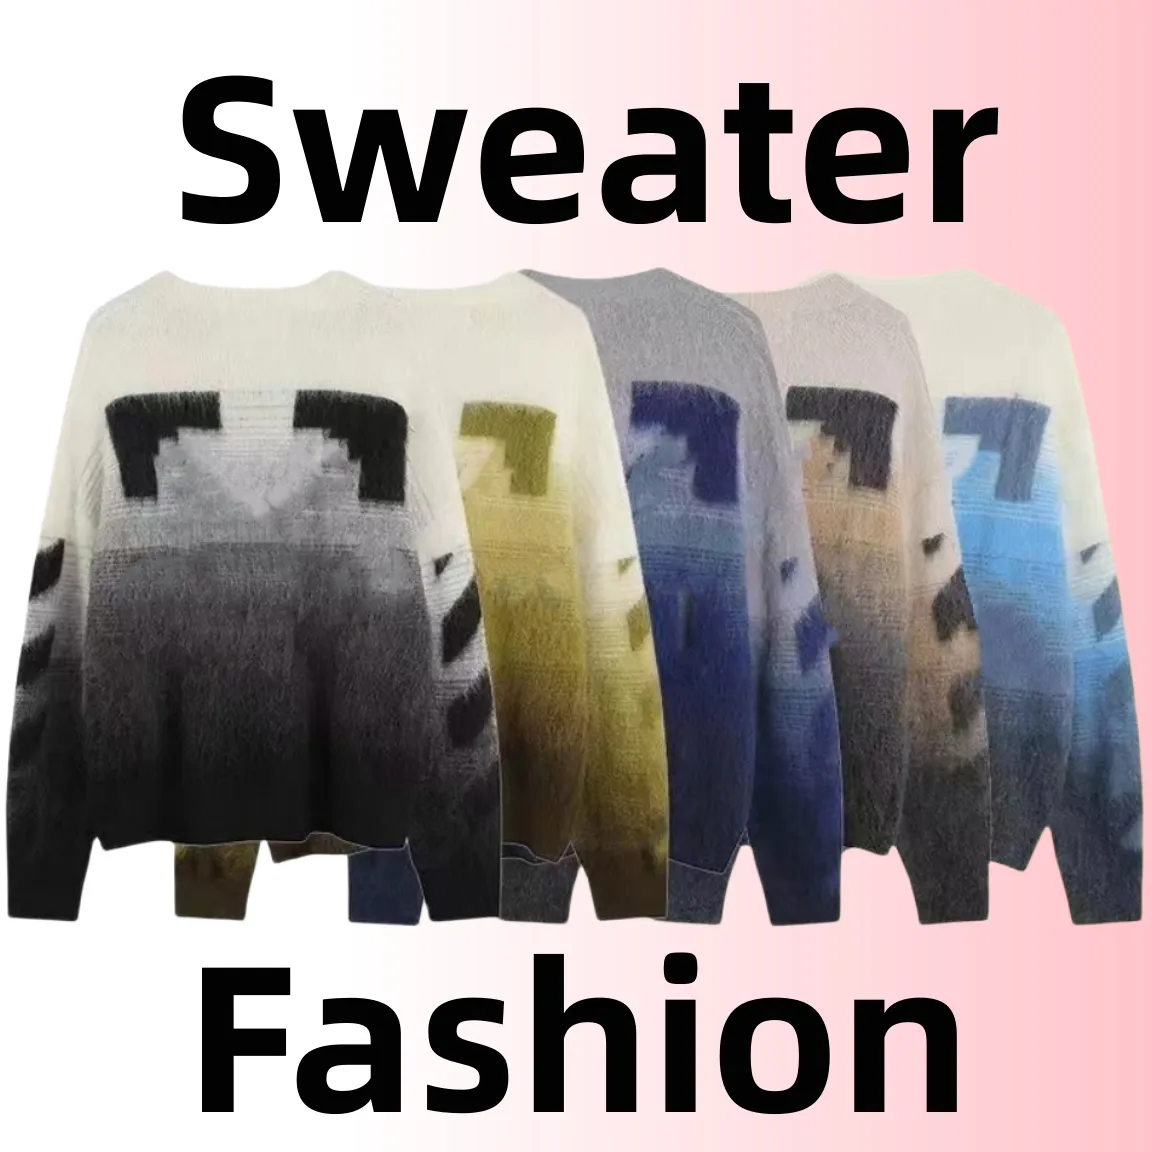 스웨터 디자이너 까마귀 남성 스웨터 여자 스웨터 여성 스웨터 모헤어 탑 에디션 태그 캐주얼 화살표 패턴 도매 2 조각 10% 할인